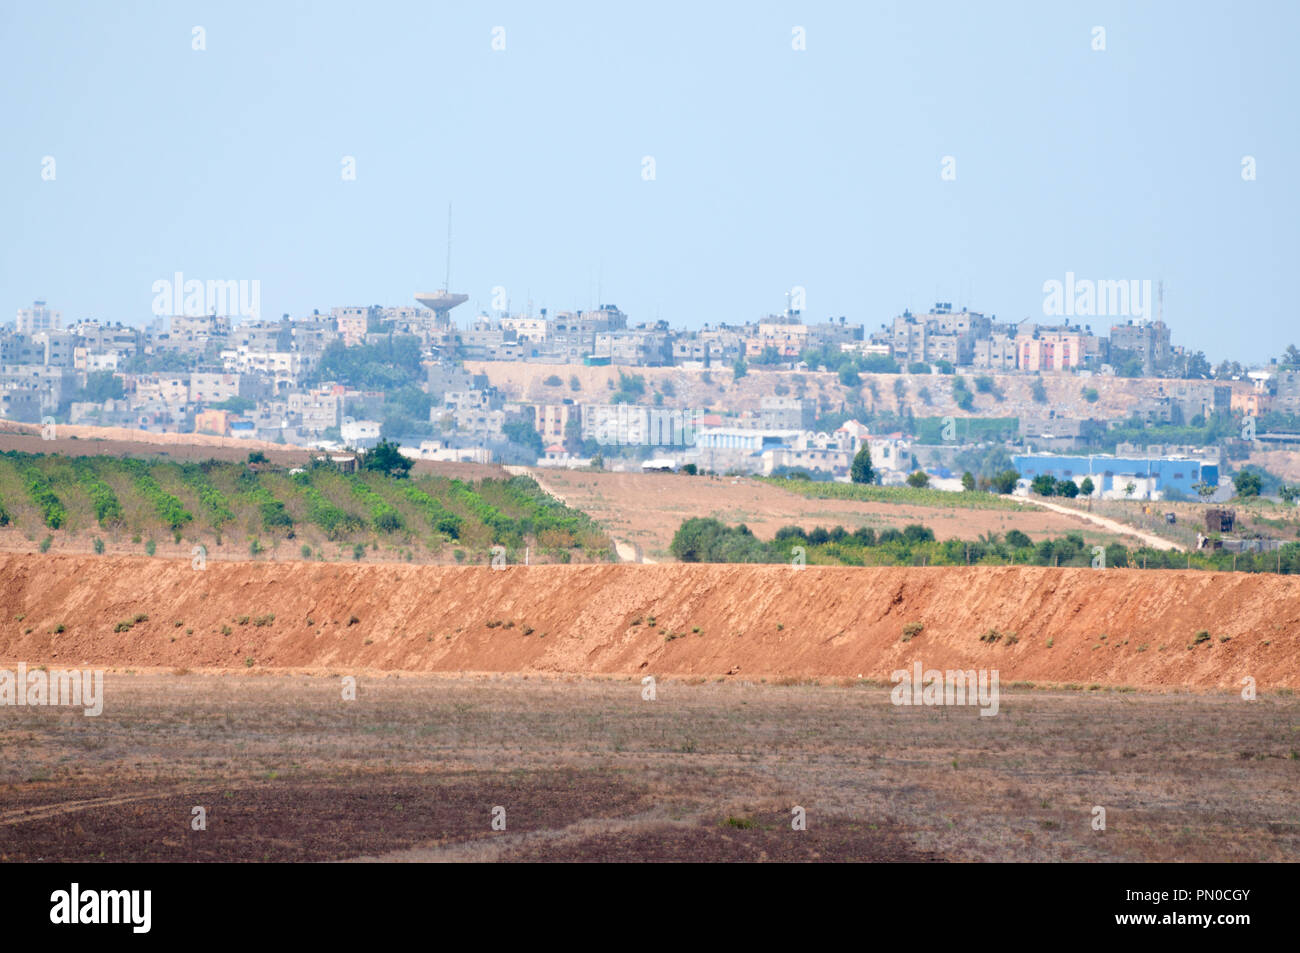 Gaza strip region Stock Photo